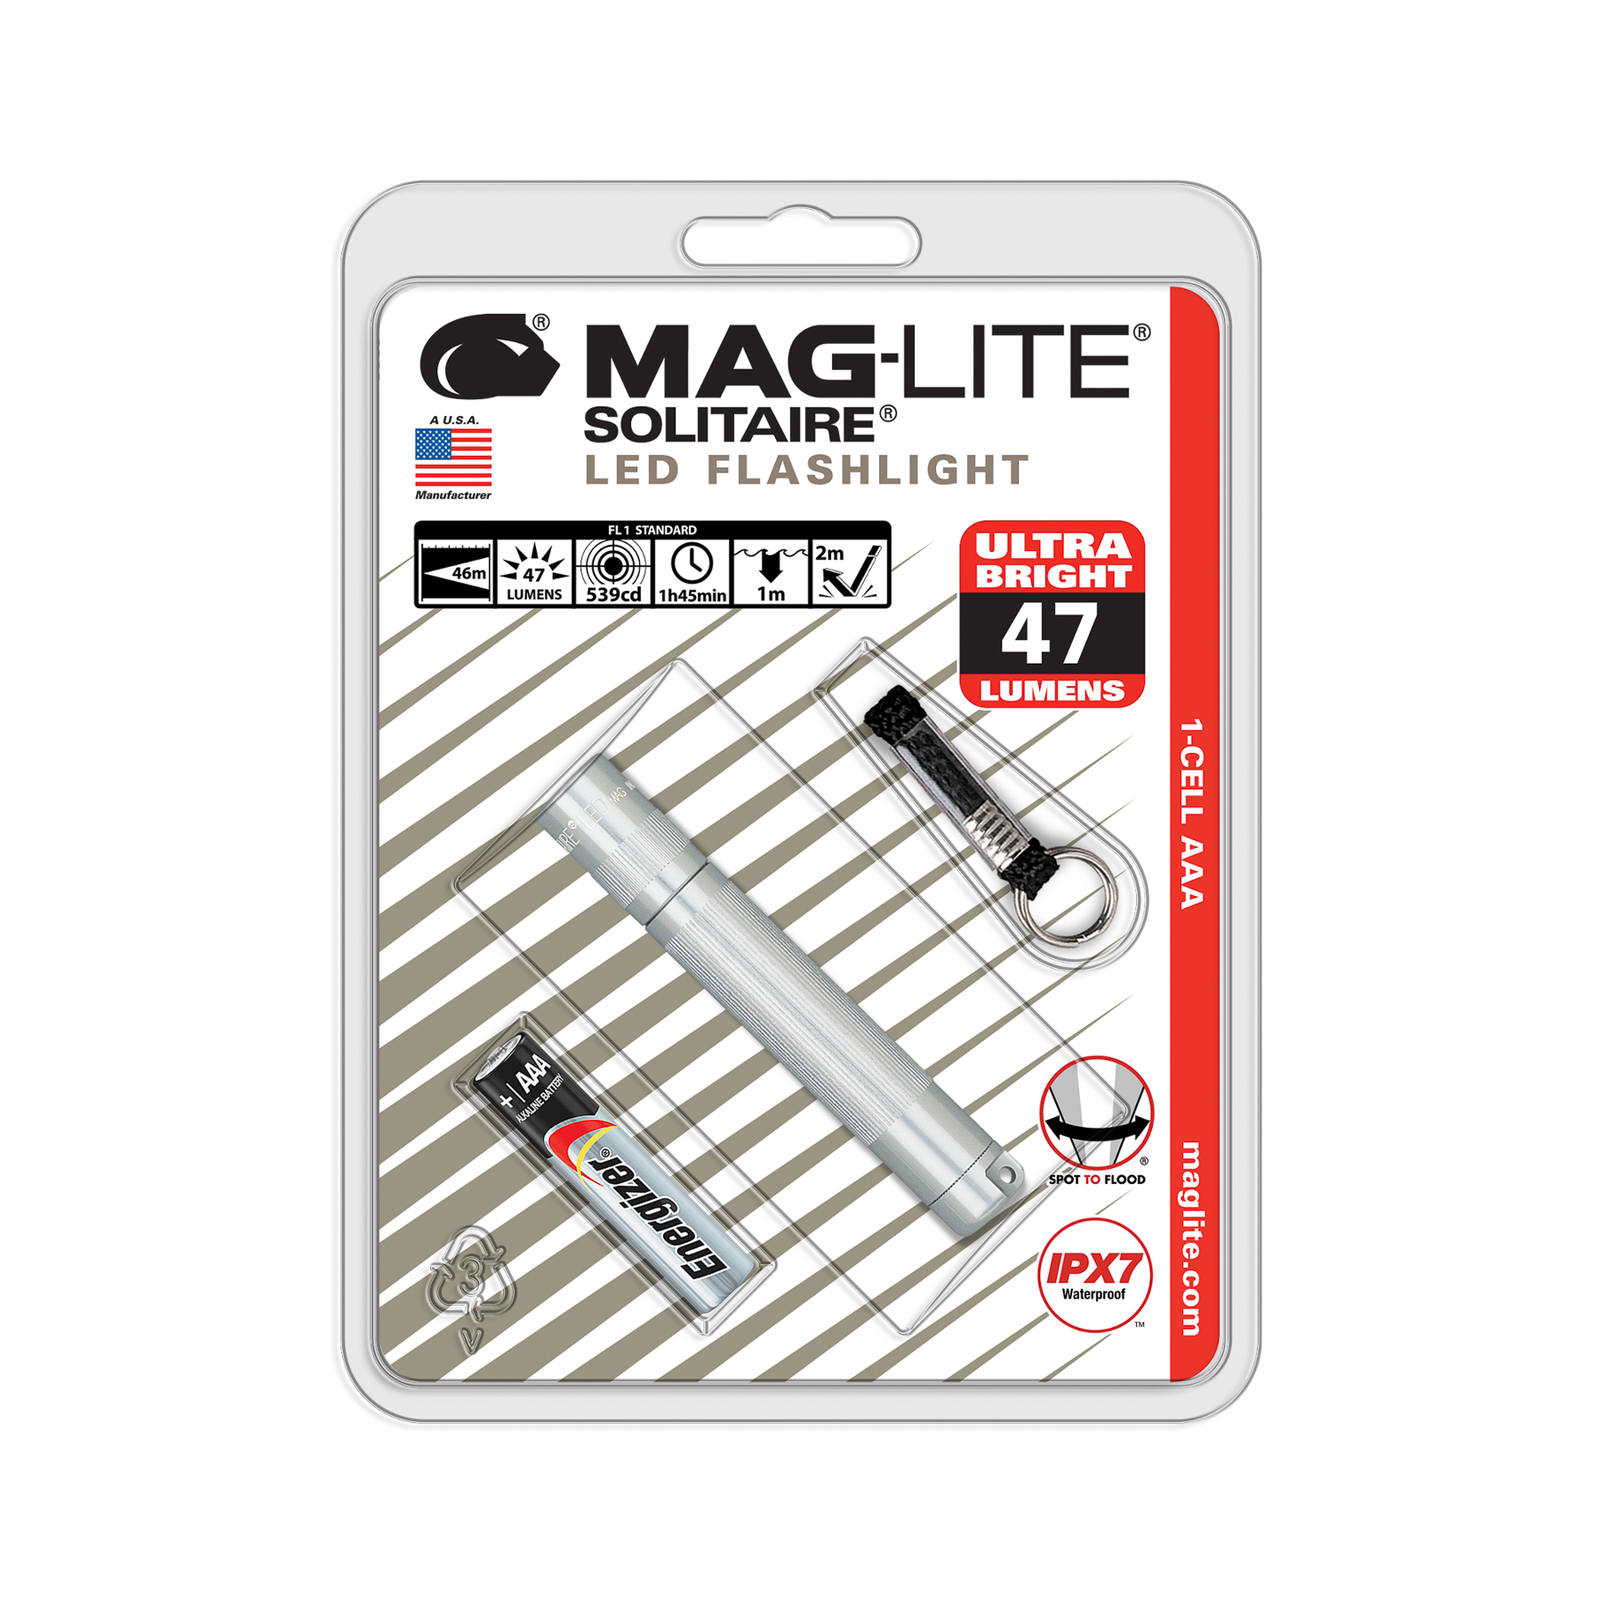 Svítilna Maglite LED Solitaire, 1 článek AAA, stříbrná